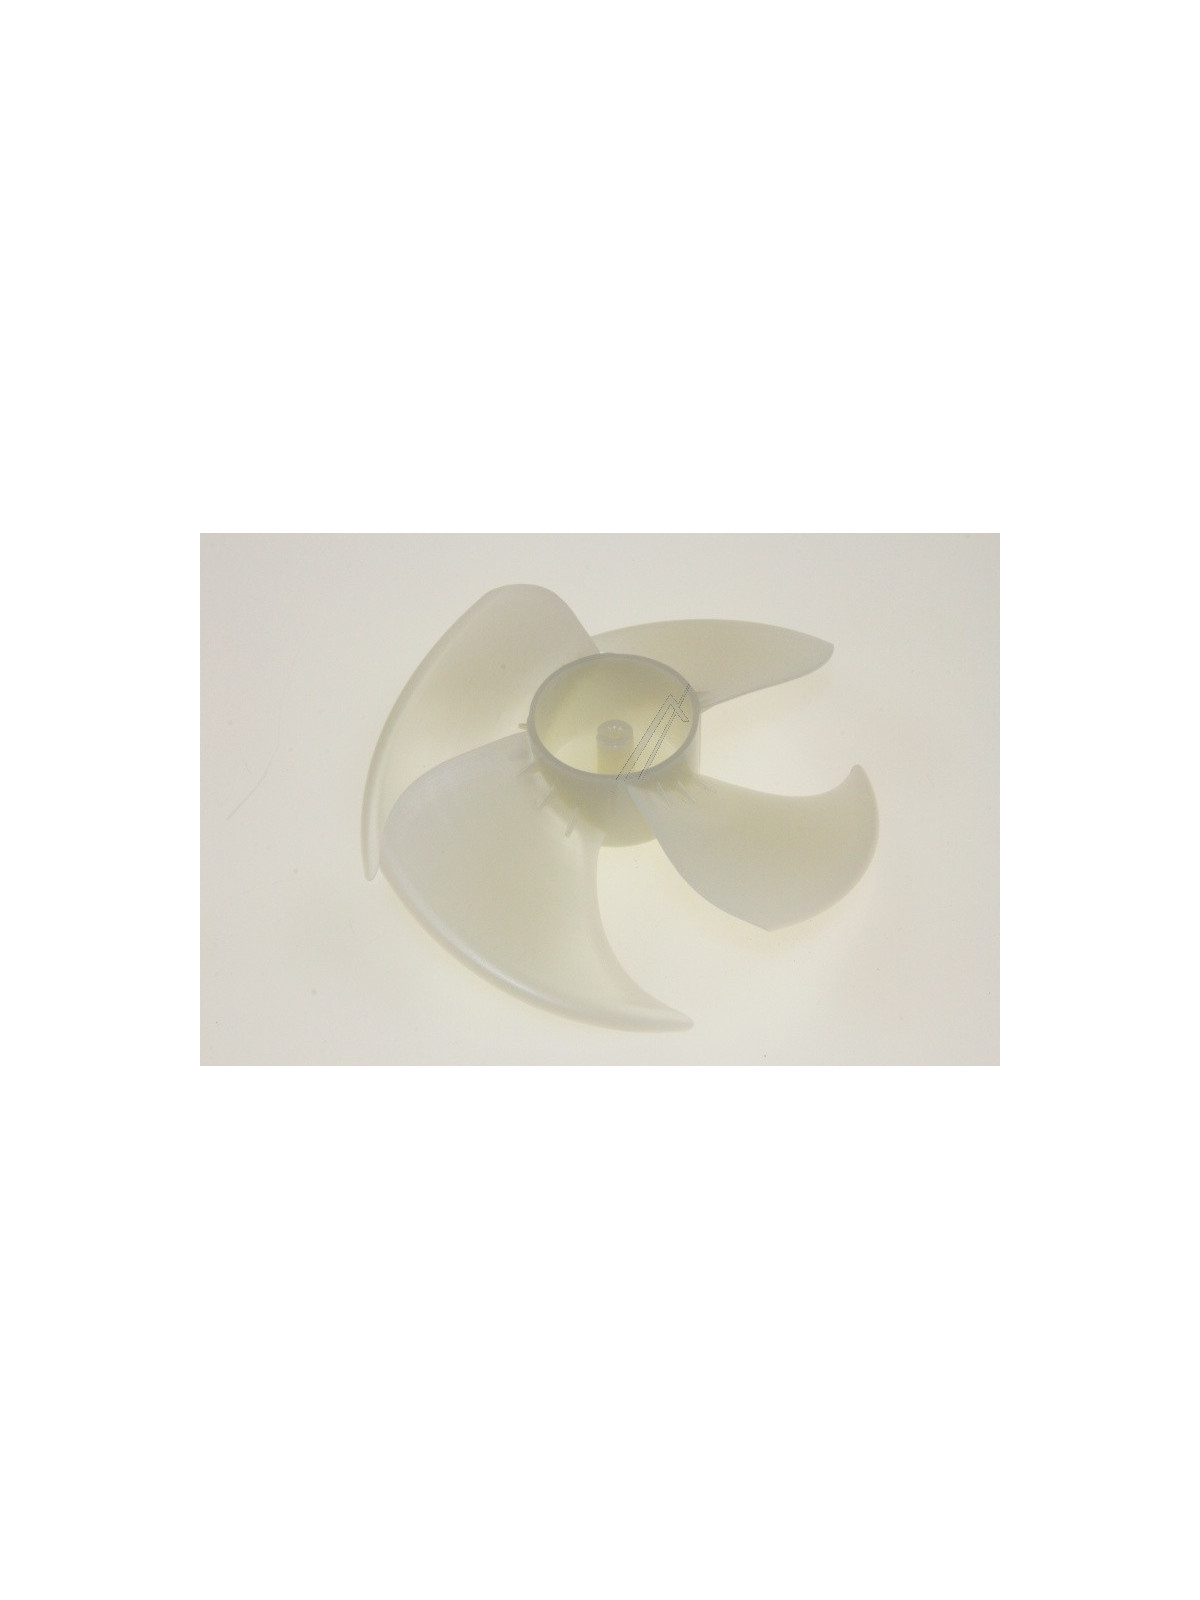 Hélice ventilateur Samsung RL38ECPS1 / RL41PGPS1 - Réfrigérateur